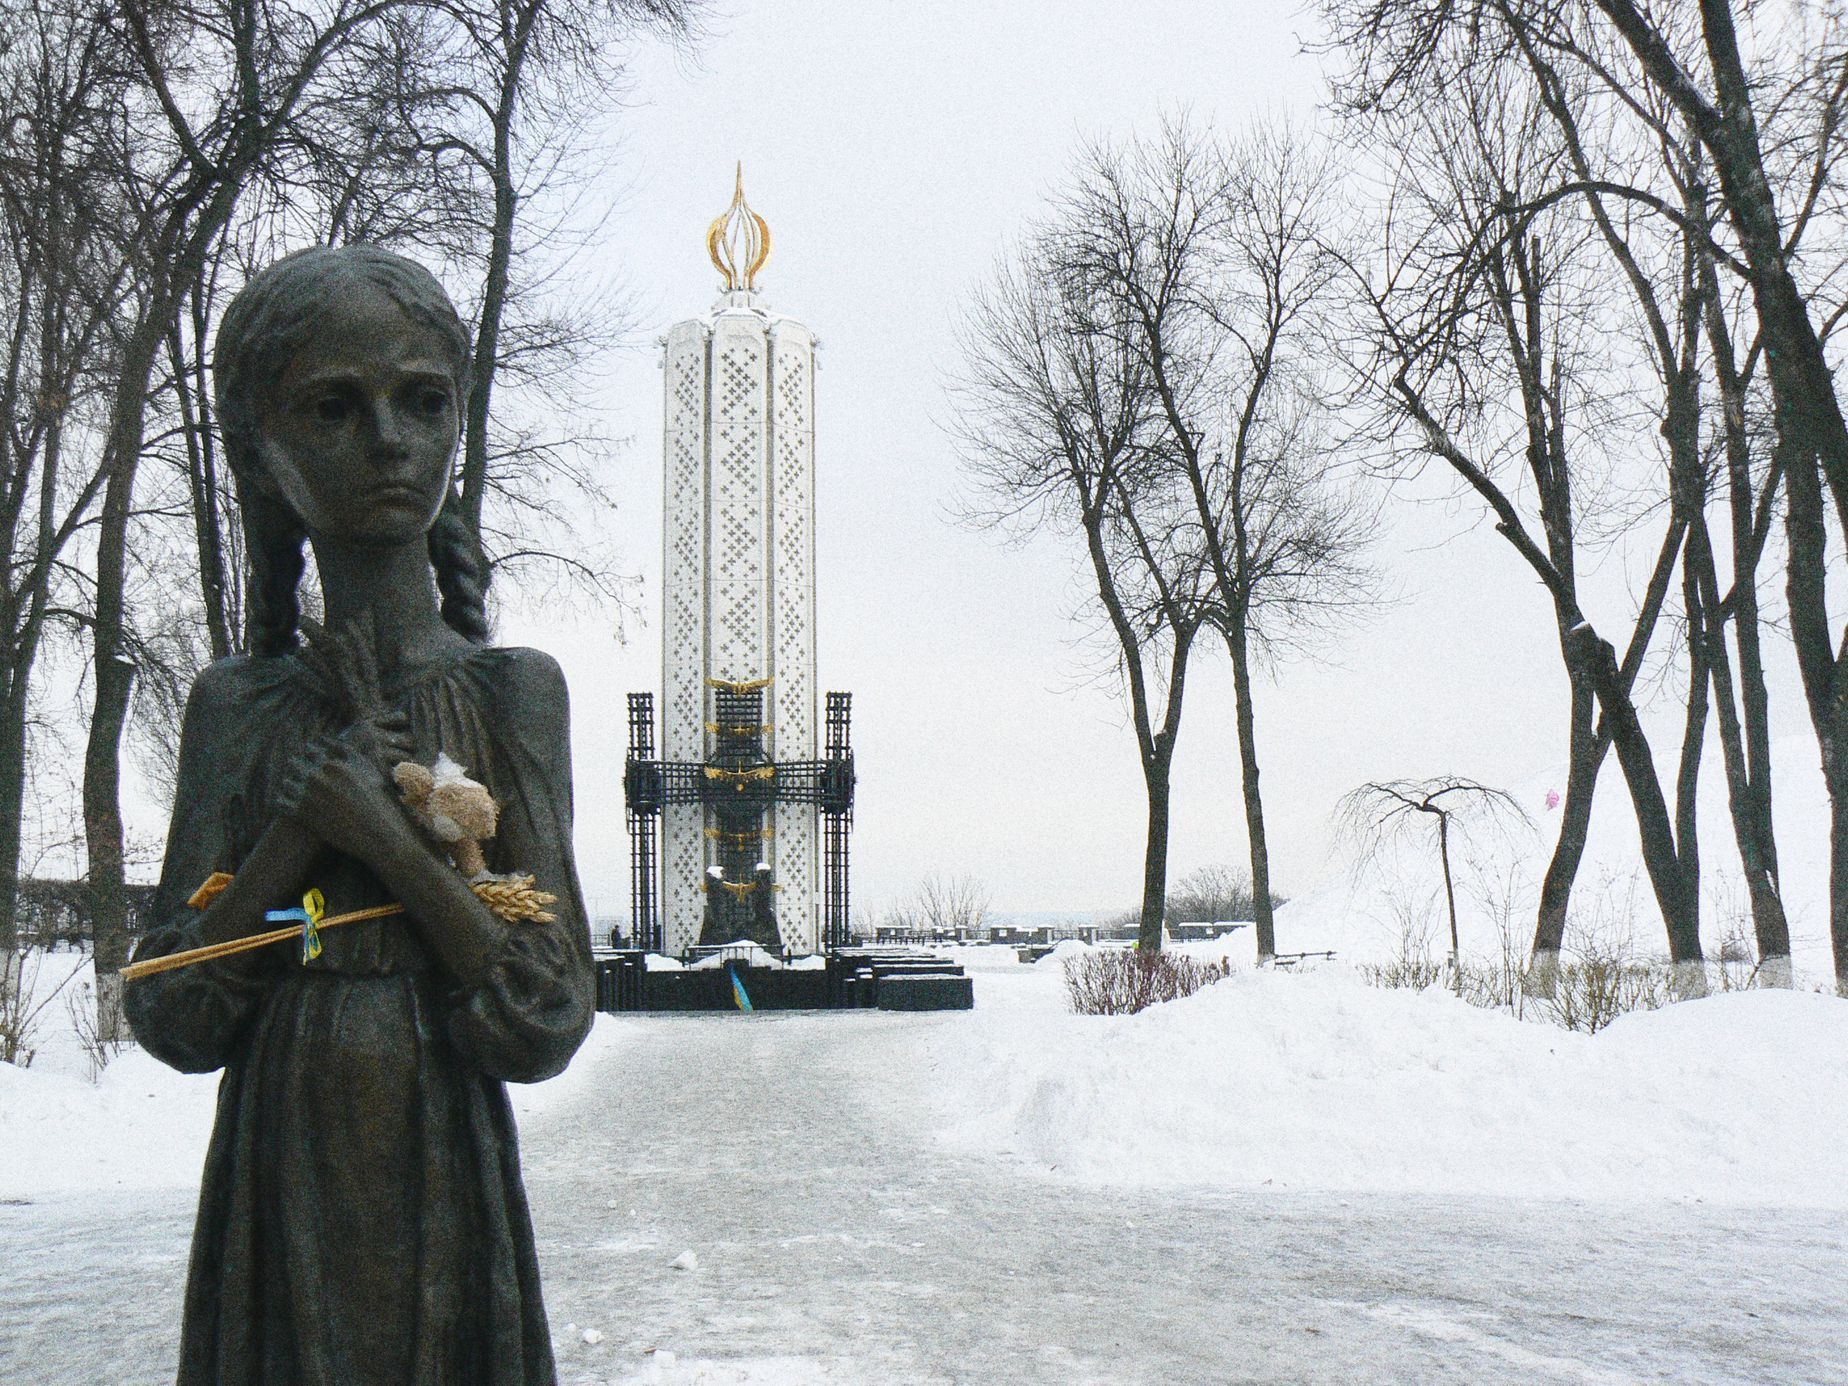 Jednorázové použití / Fotogalerie / Stalinův Holodomor na Ukrajině v 30 letech stál životy 10 miliónů lidí / Wikipedia